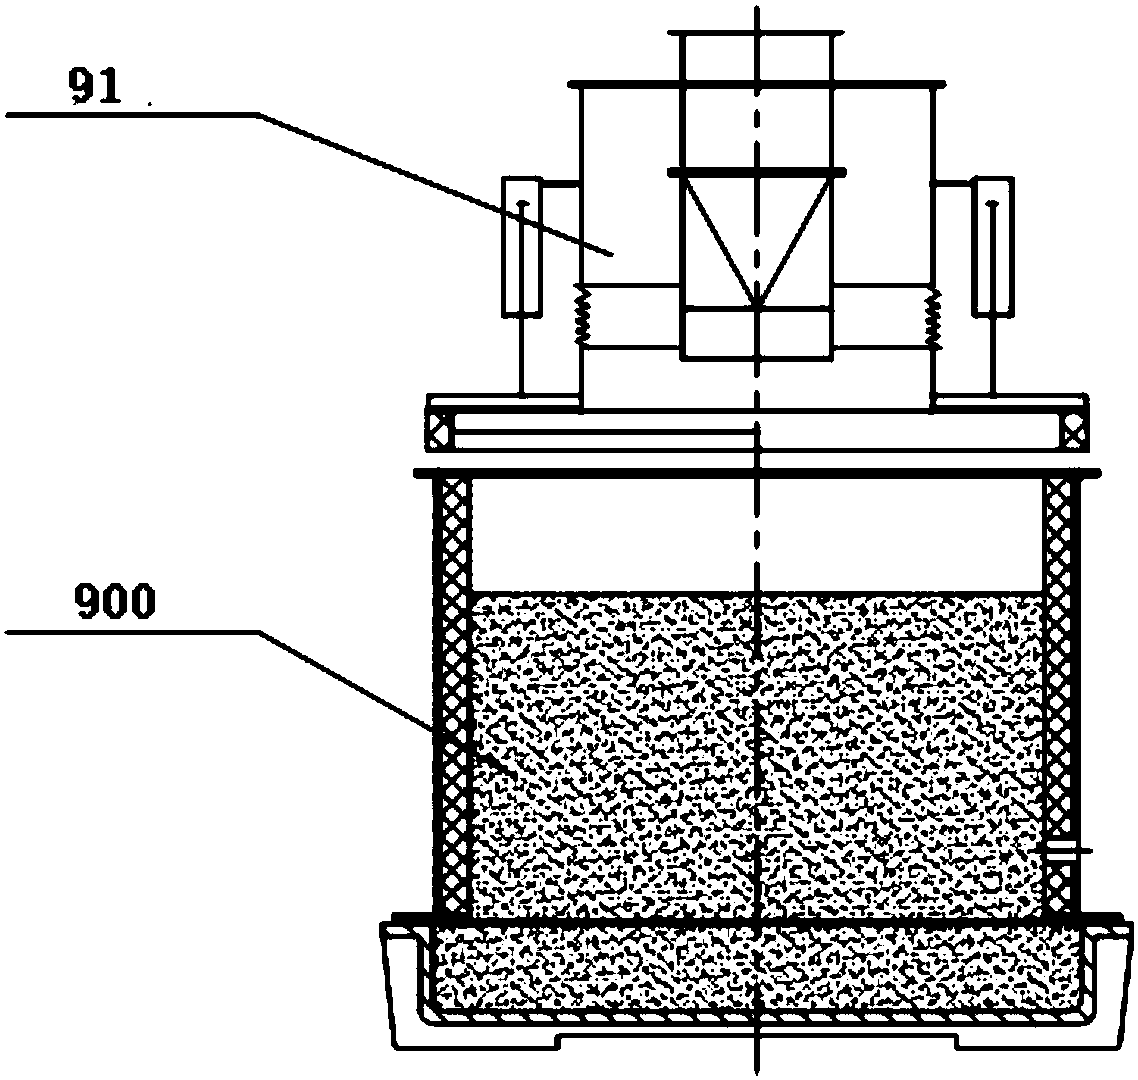 Ferromolybdenum smelting batching system